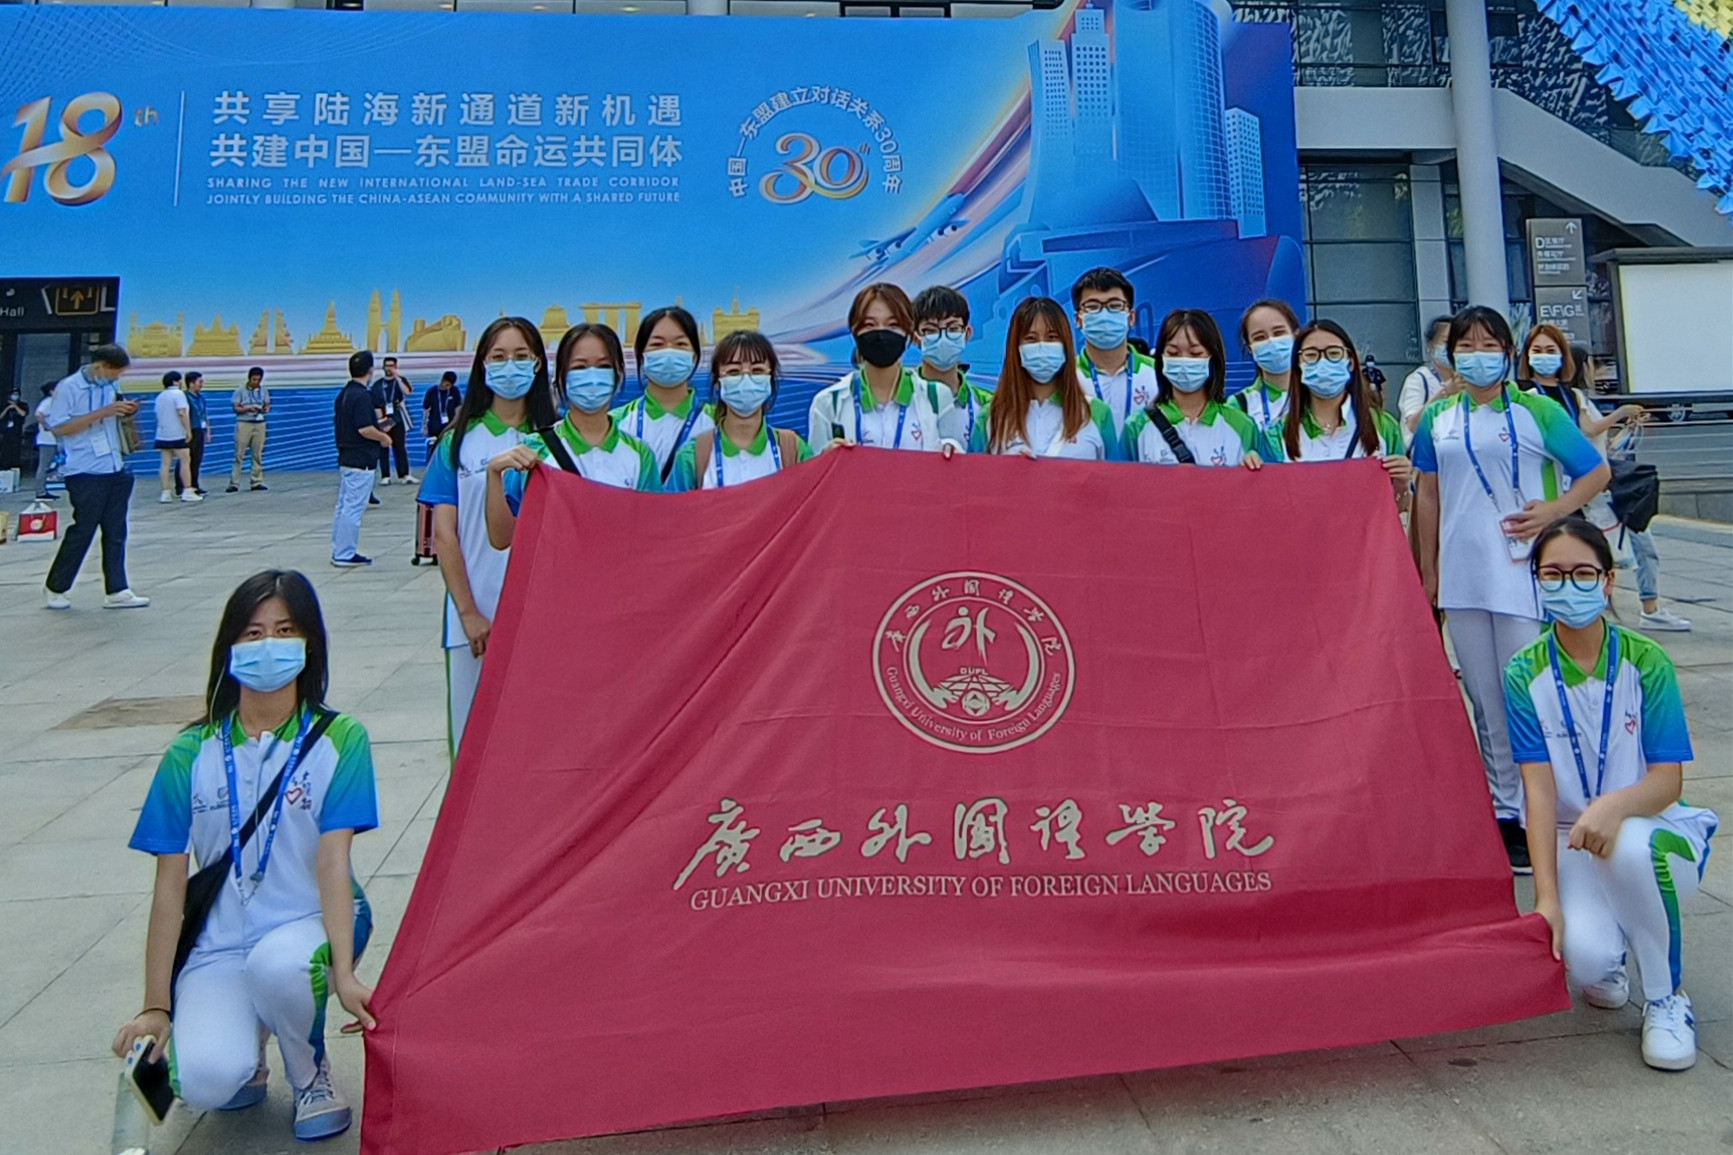 广西外国语学院志愿者服务第18届中国-东盟博览会